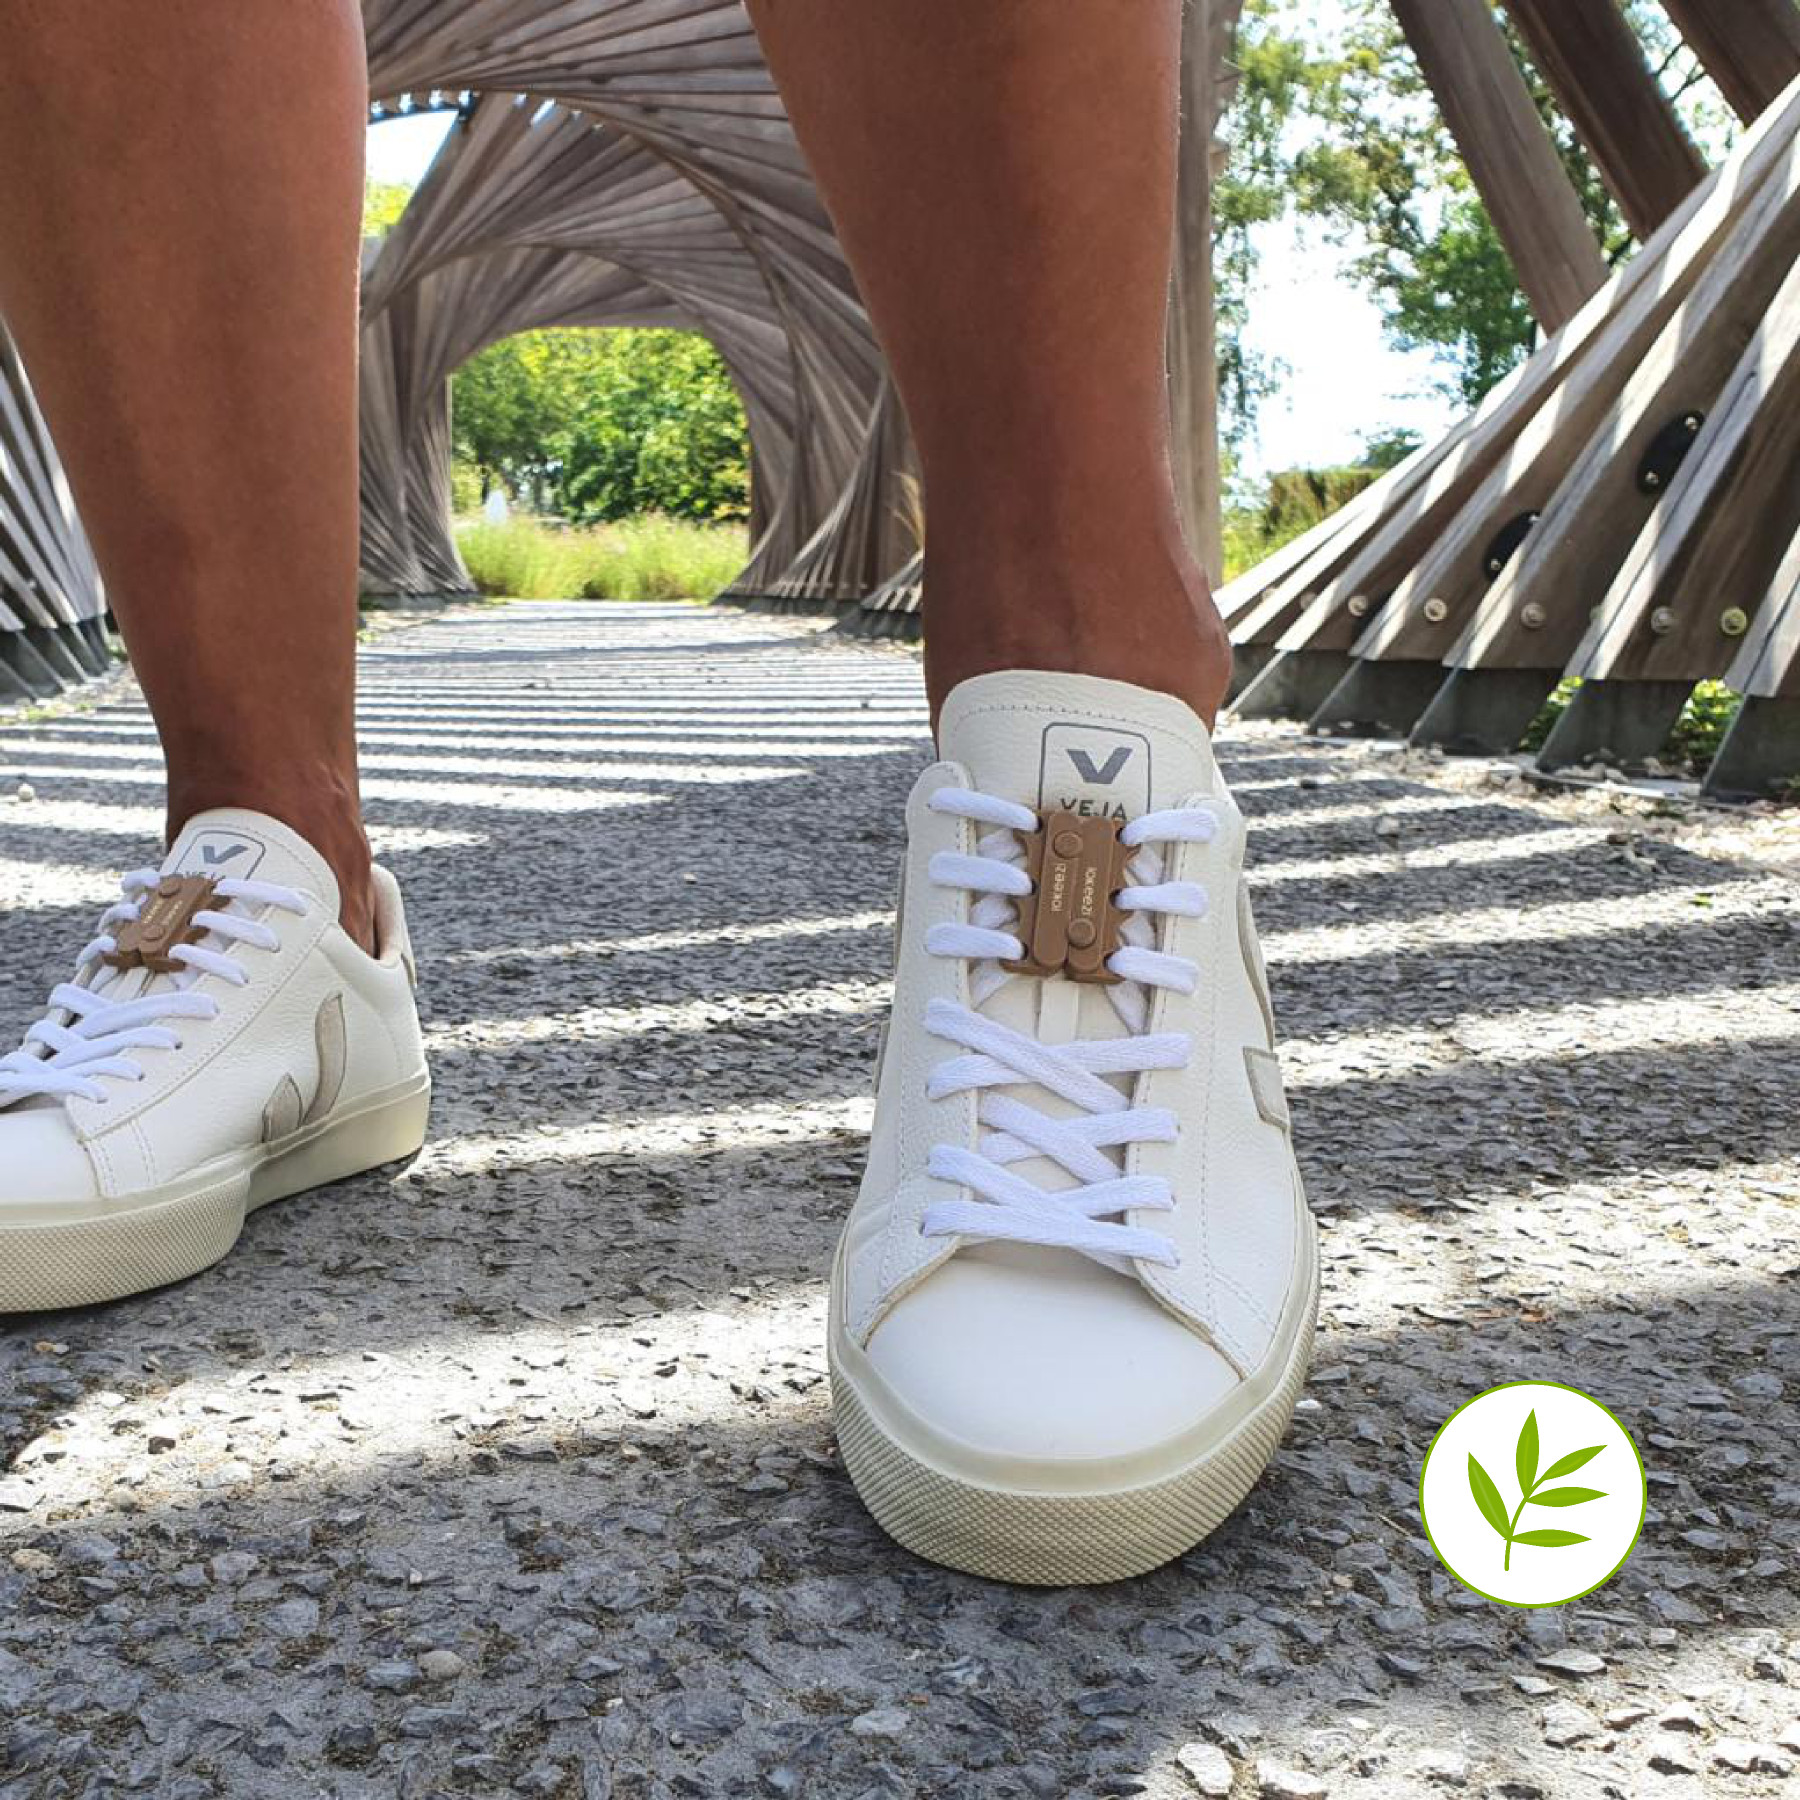 fermetures rapides pour sneakers et chaussures à lacets. un matériau vert à partir de pulpe de bambou biosourcé.<br />
Ce matériau est une alternative végétale pour aller au-delà du plastique